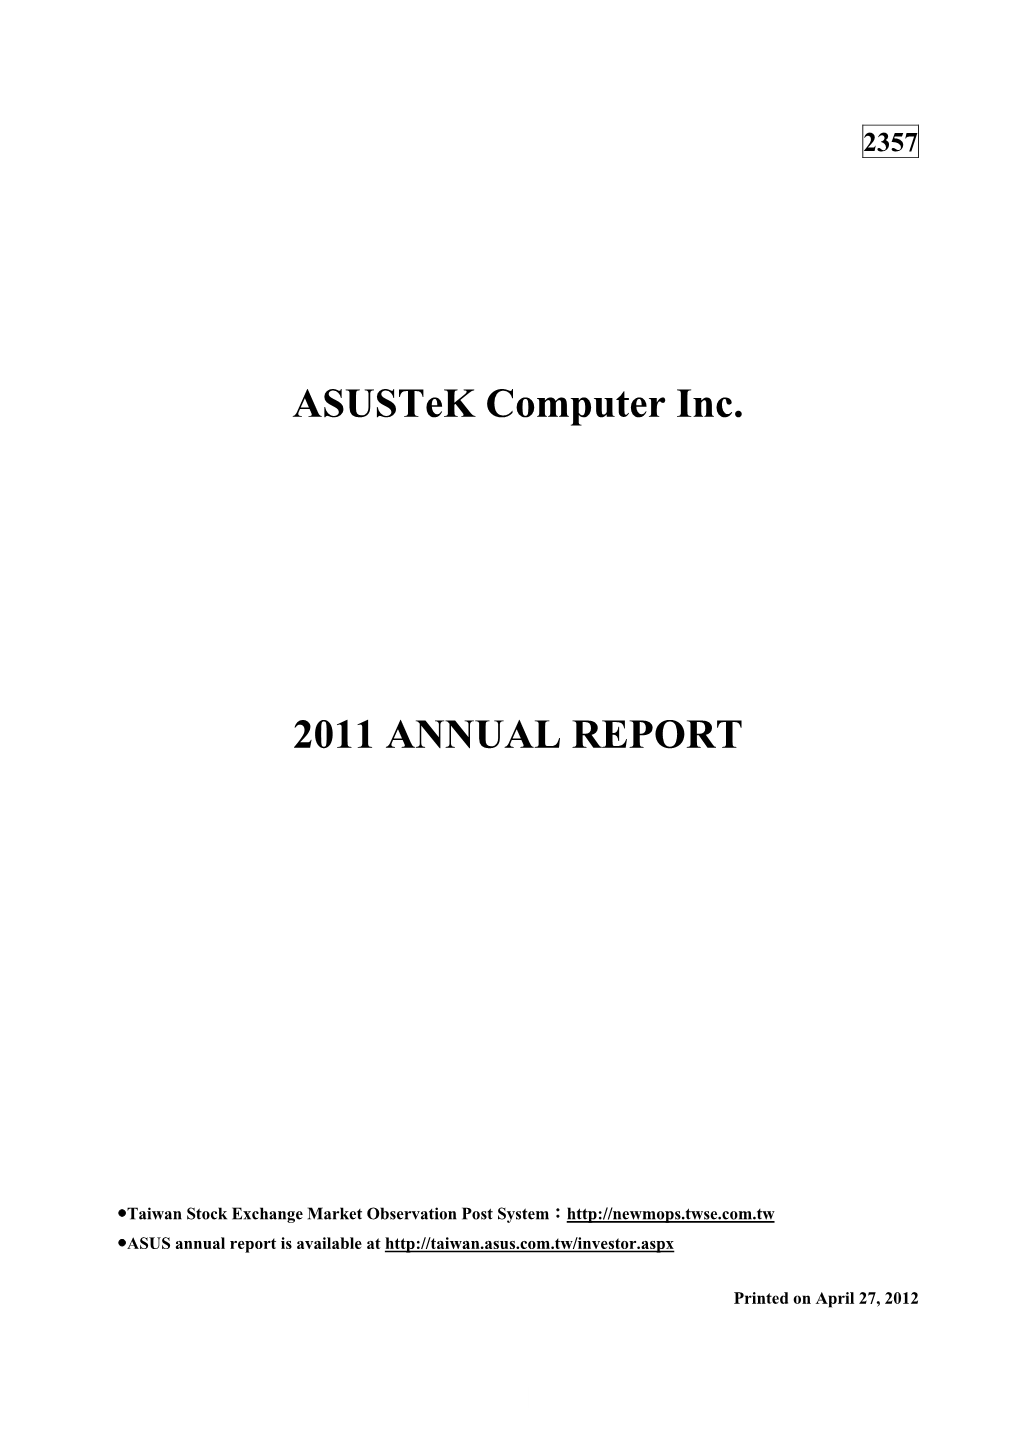 Asustek Computer Inc. 2011 ANNUAL REPORT